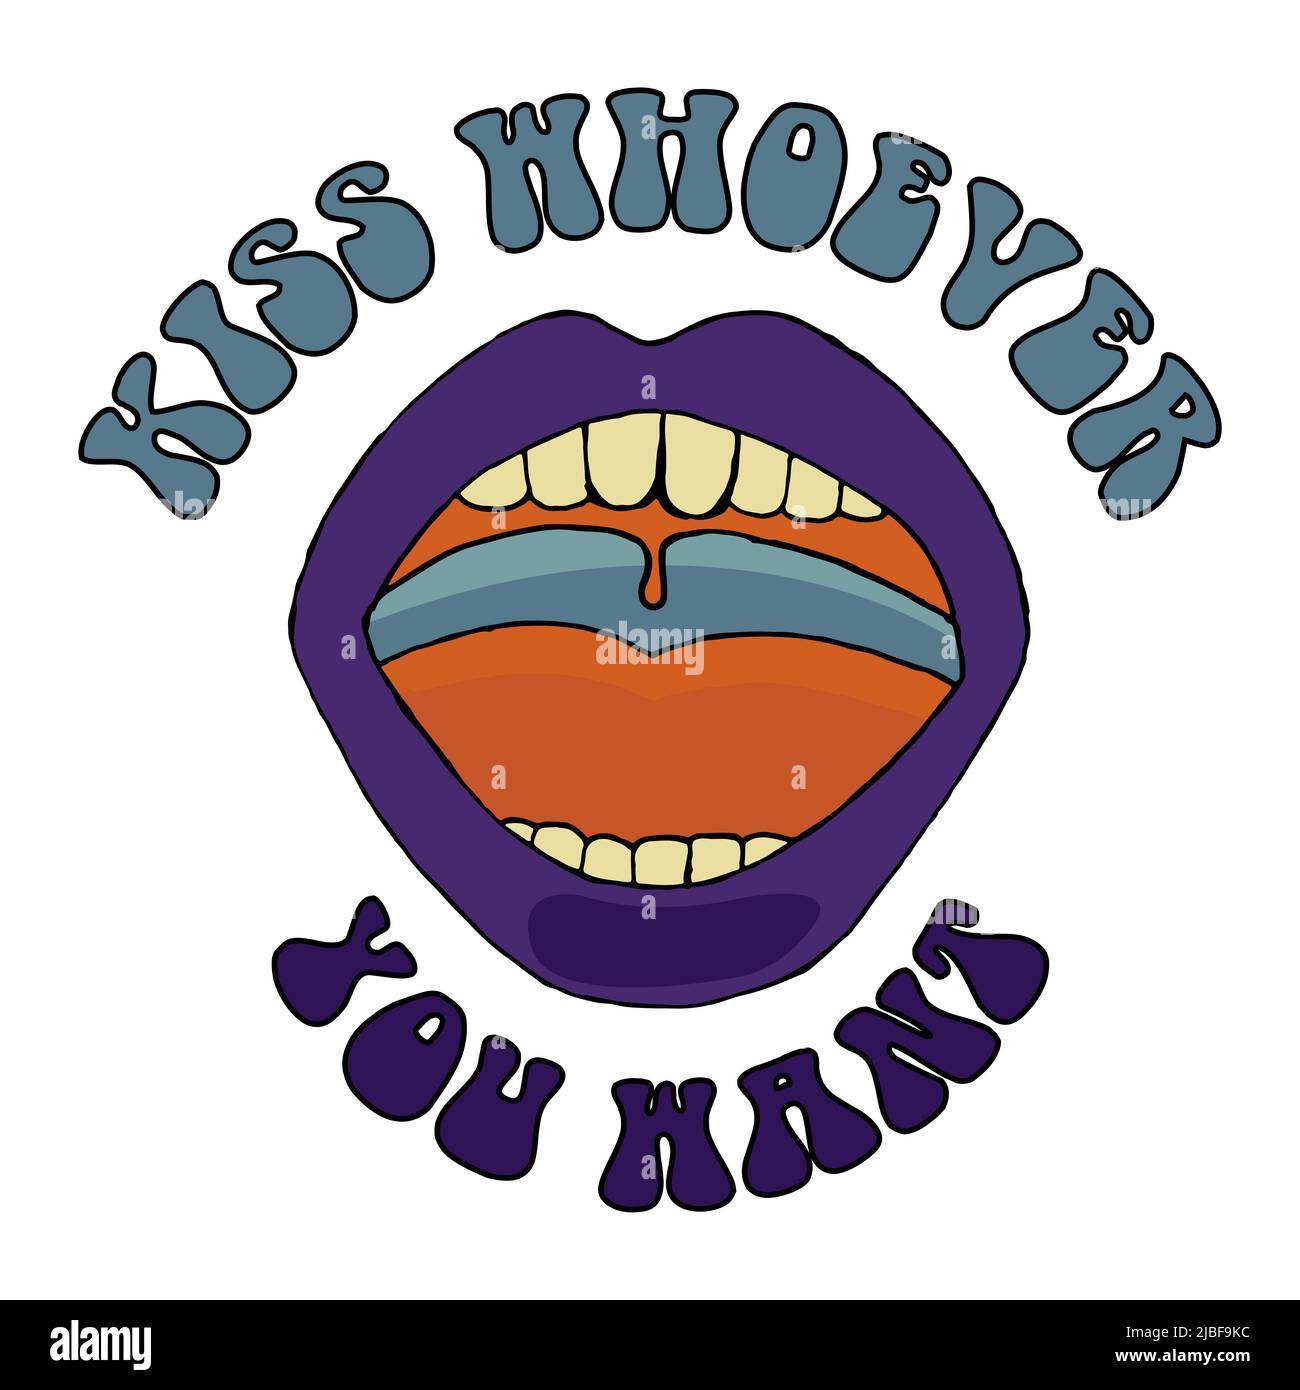 KiSS Whhoever You Want, Journée internationale de la femme. 8th mars. Le concept du mouvement d'autonomisation des femmes Banque D'Images